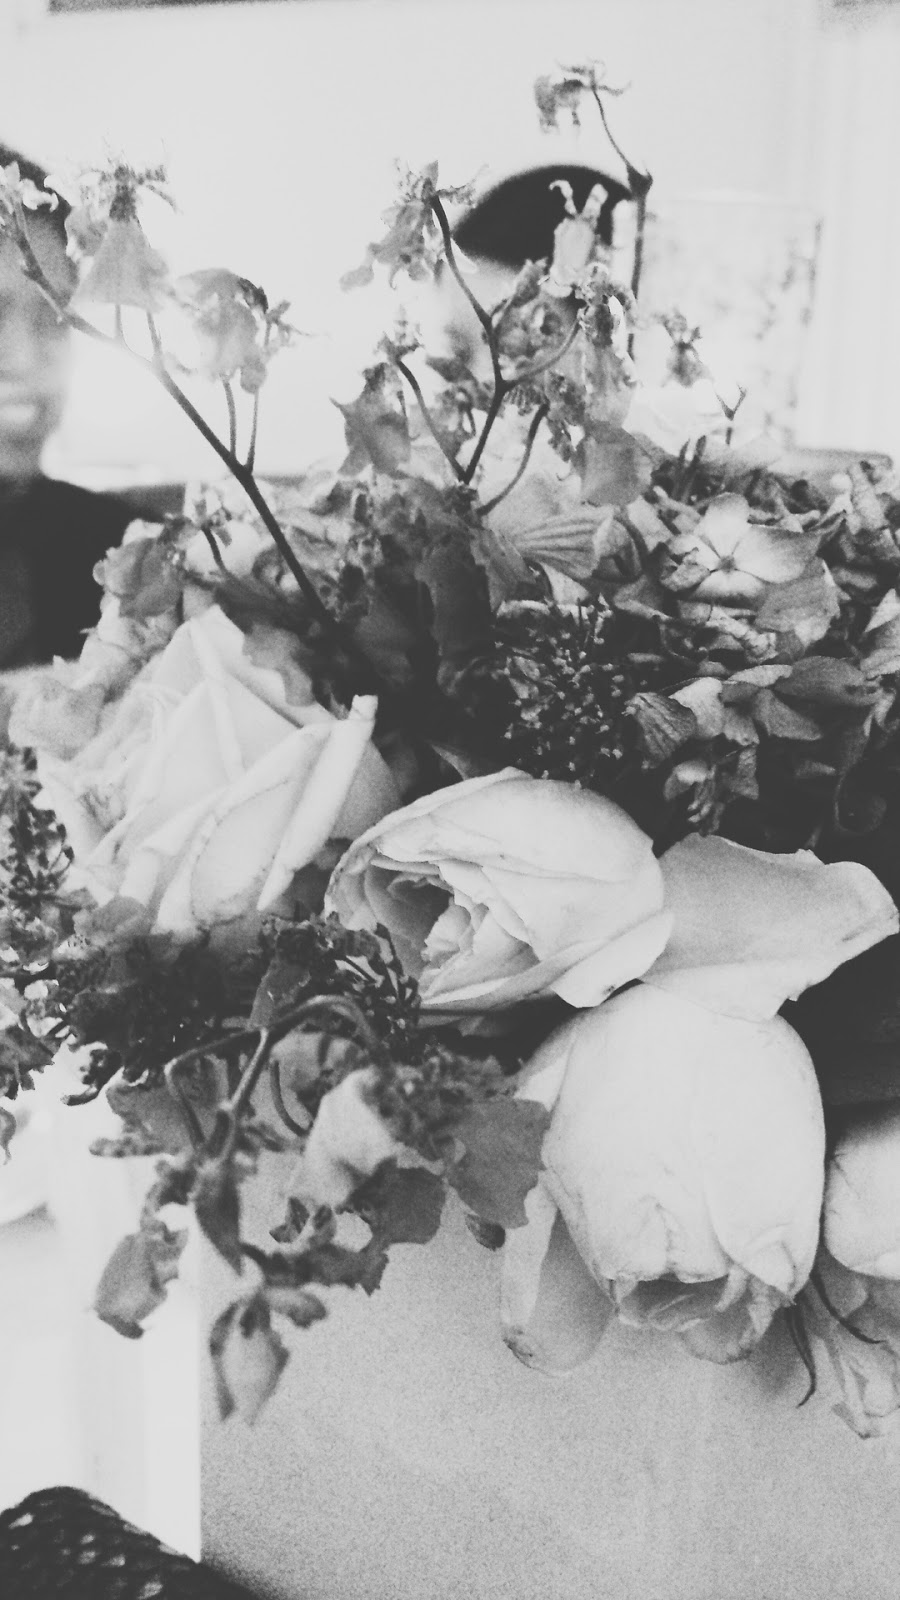 배경 hitam putih,하얀,사진,검정색과 흰색,흑백 사진,꽃